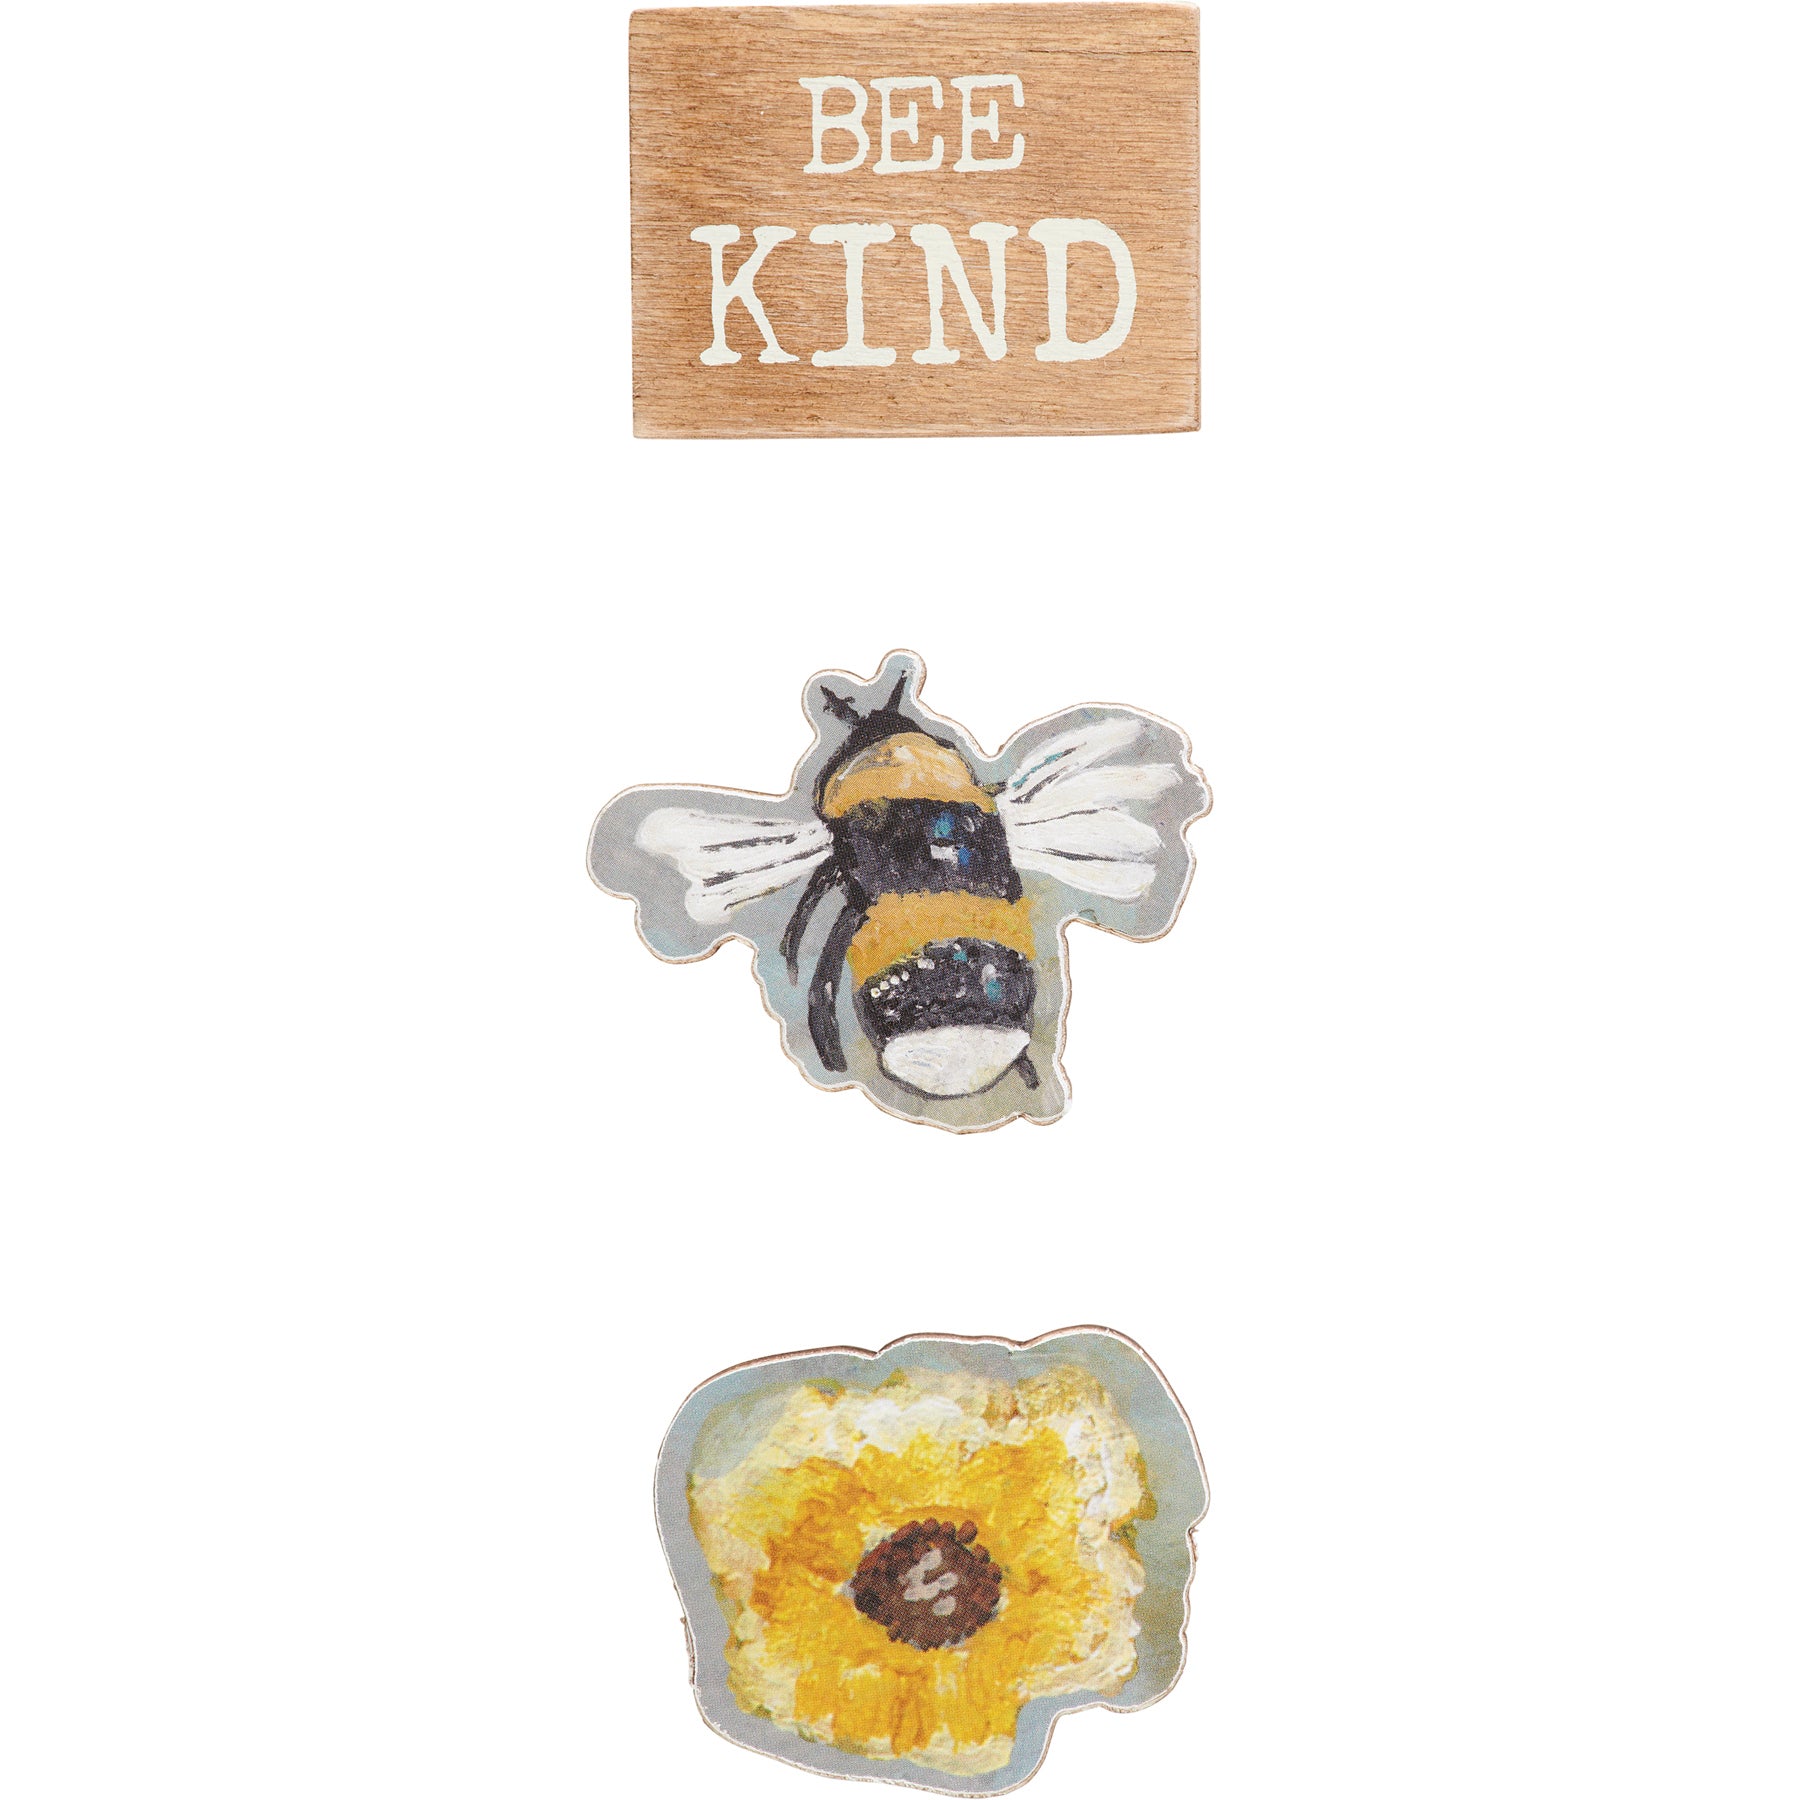 Bee Kind - Magnet Memo Set